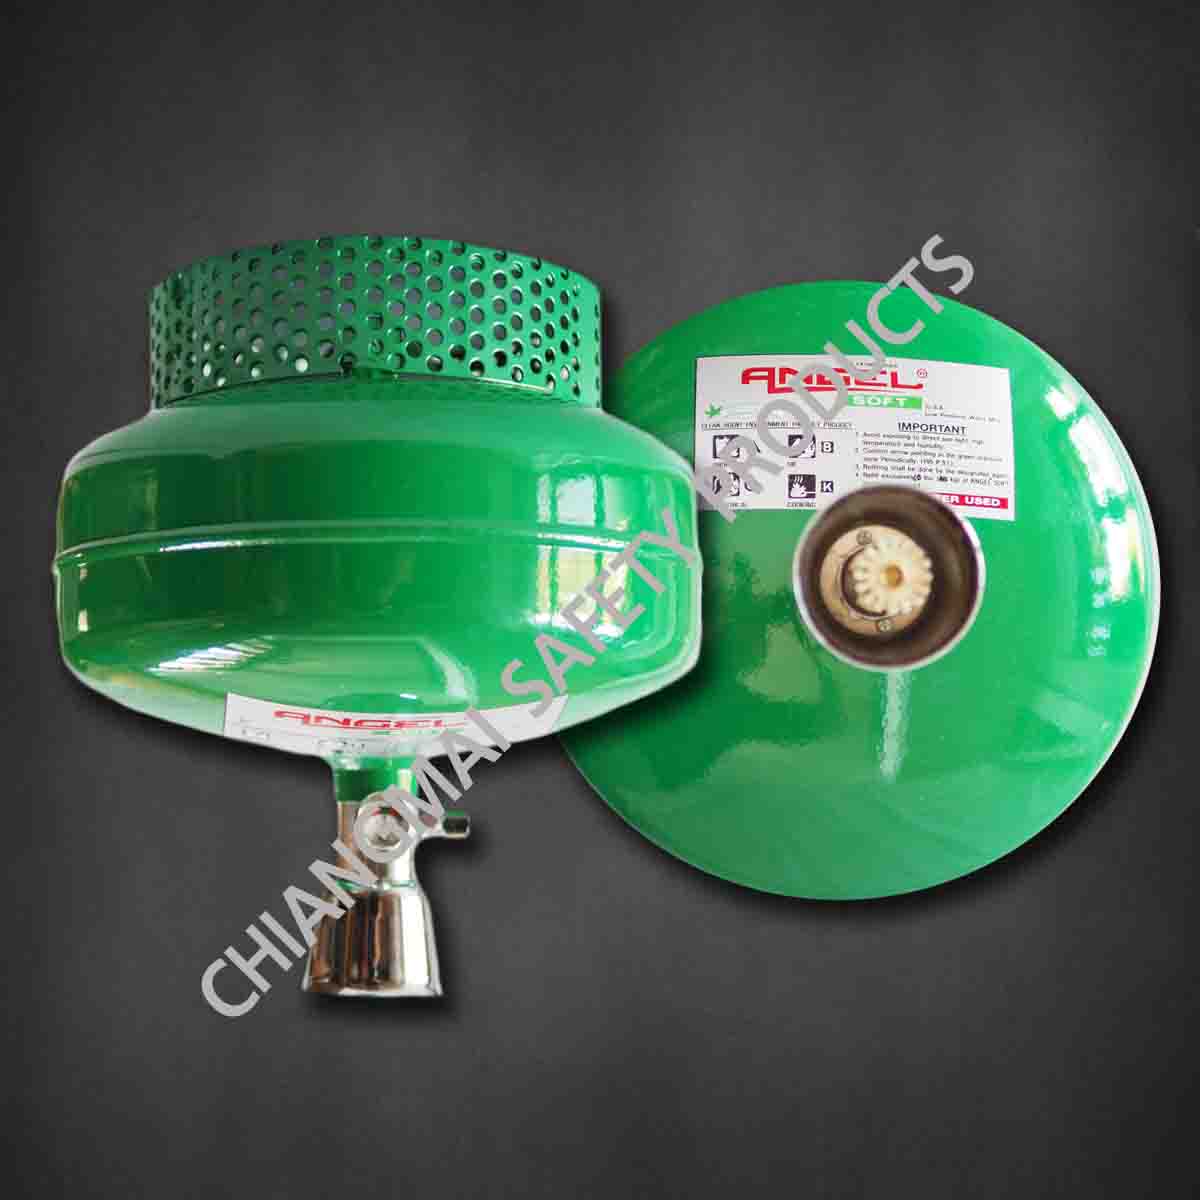 ถังดับเพลิงอัตโนมัติ เชียงใหม่ NON CFC สารสะอาด สีเขียว Angel Soft 10ปอนด์